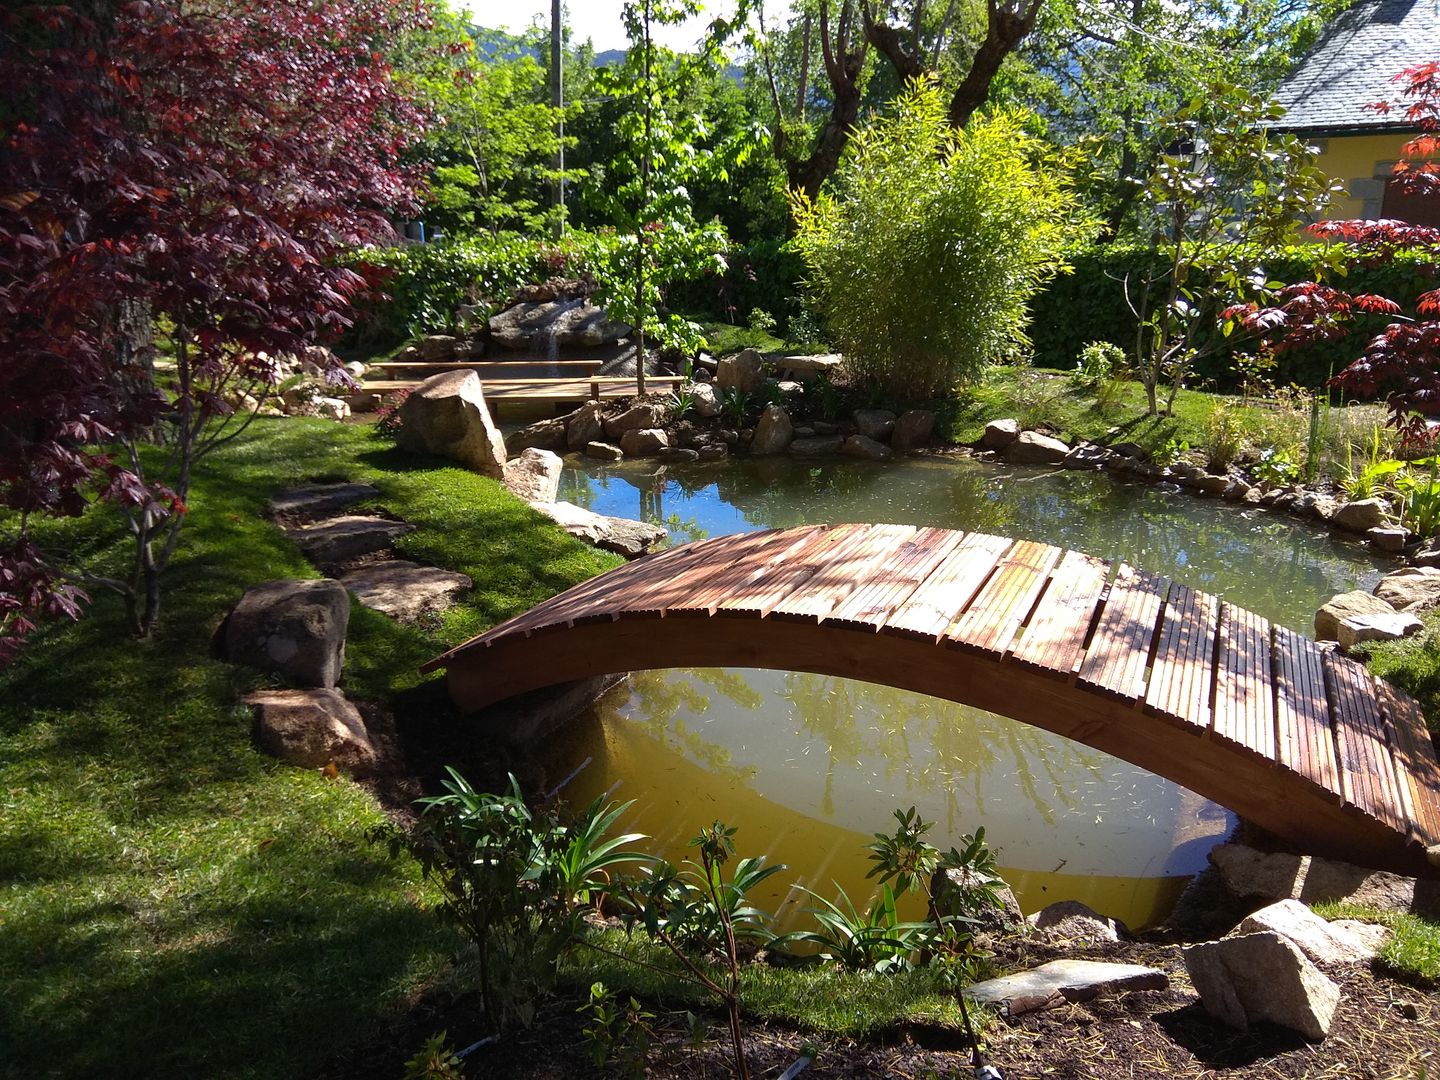 Jardin japones con estanque, Jardines Japoneses -- Estudio de Paisajismo Jardines Japoneses -- Estudio de Paisajismo Zen bahçesi